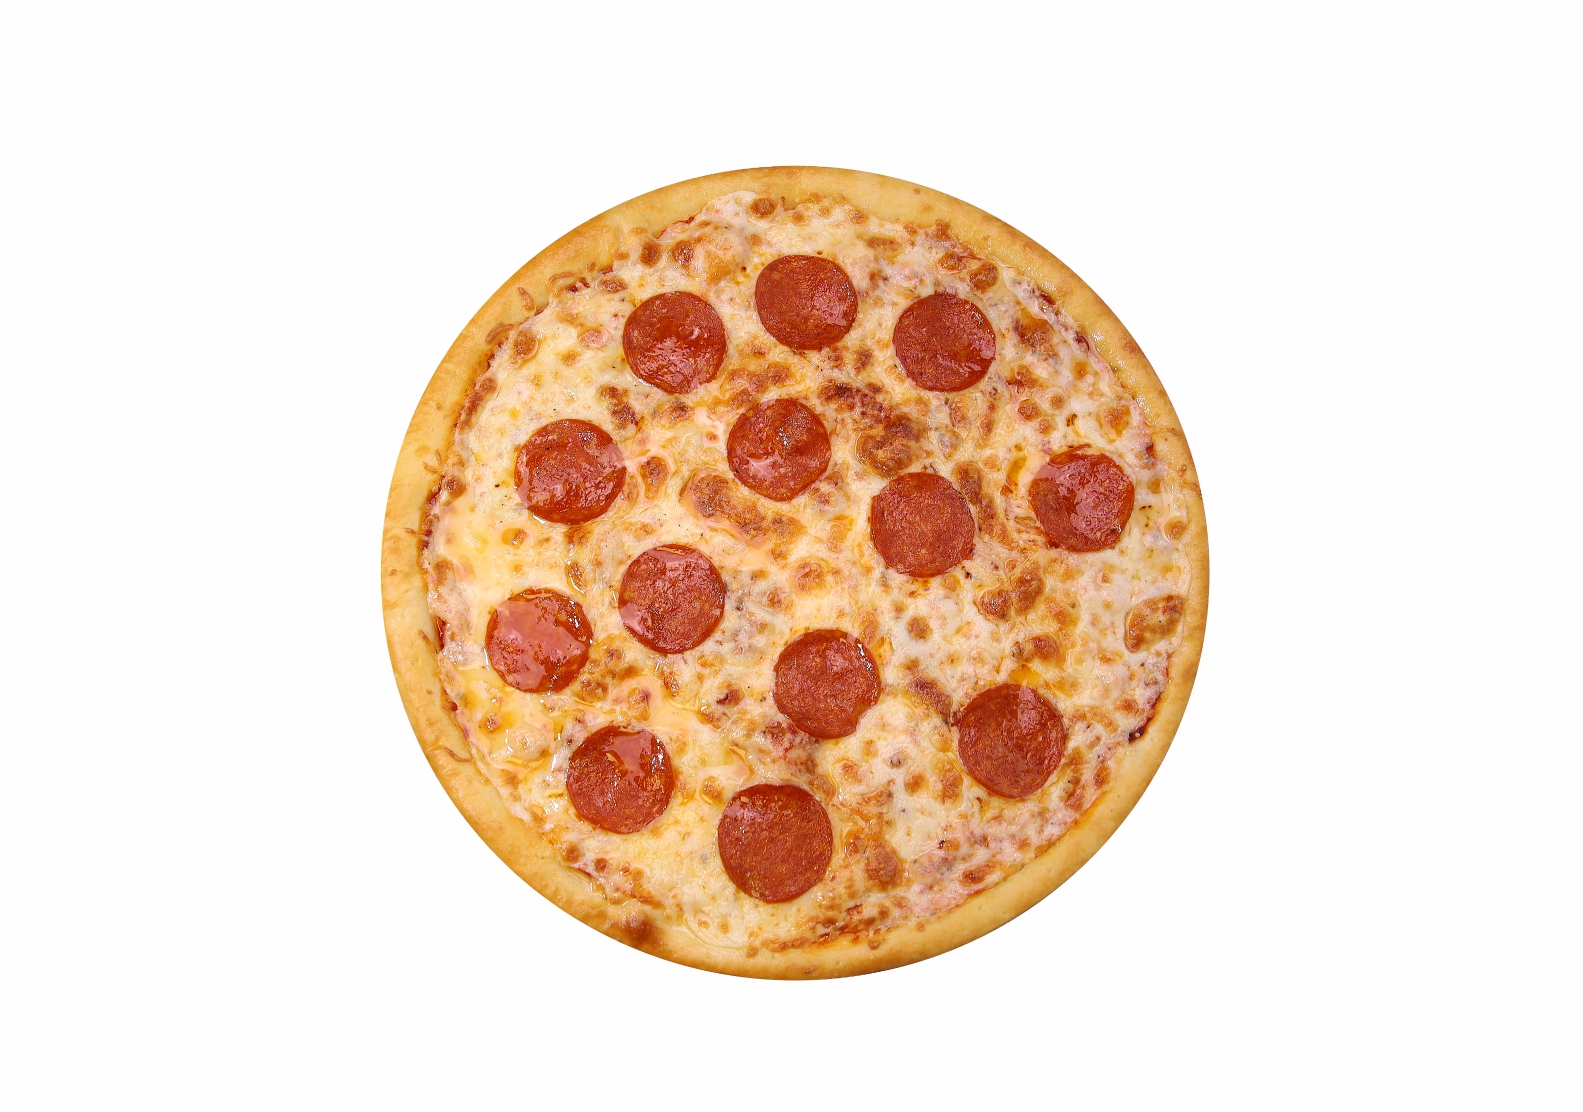 сколько стоит целая пицца пепперони фото 83